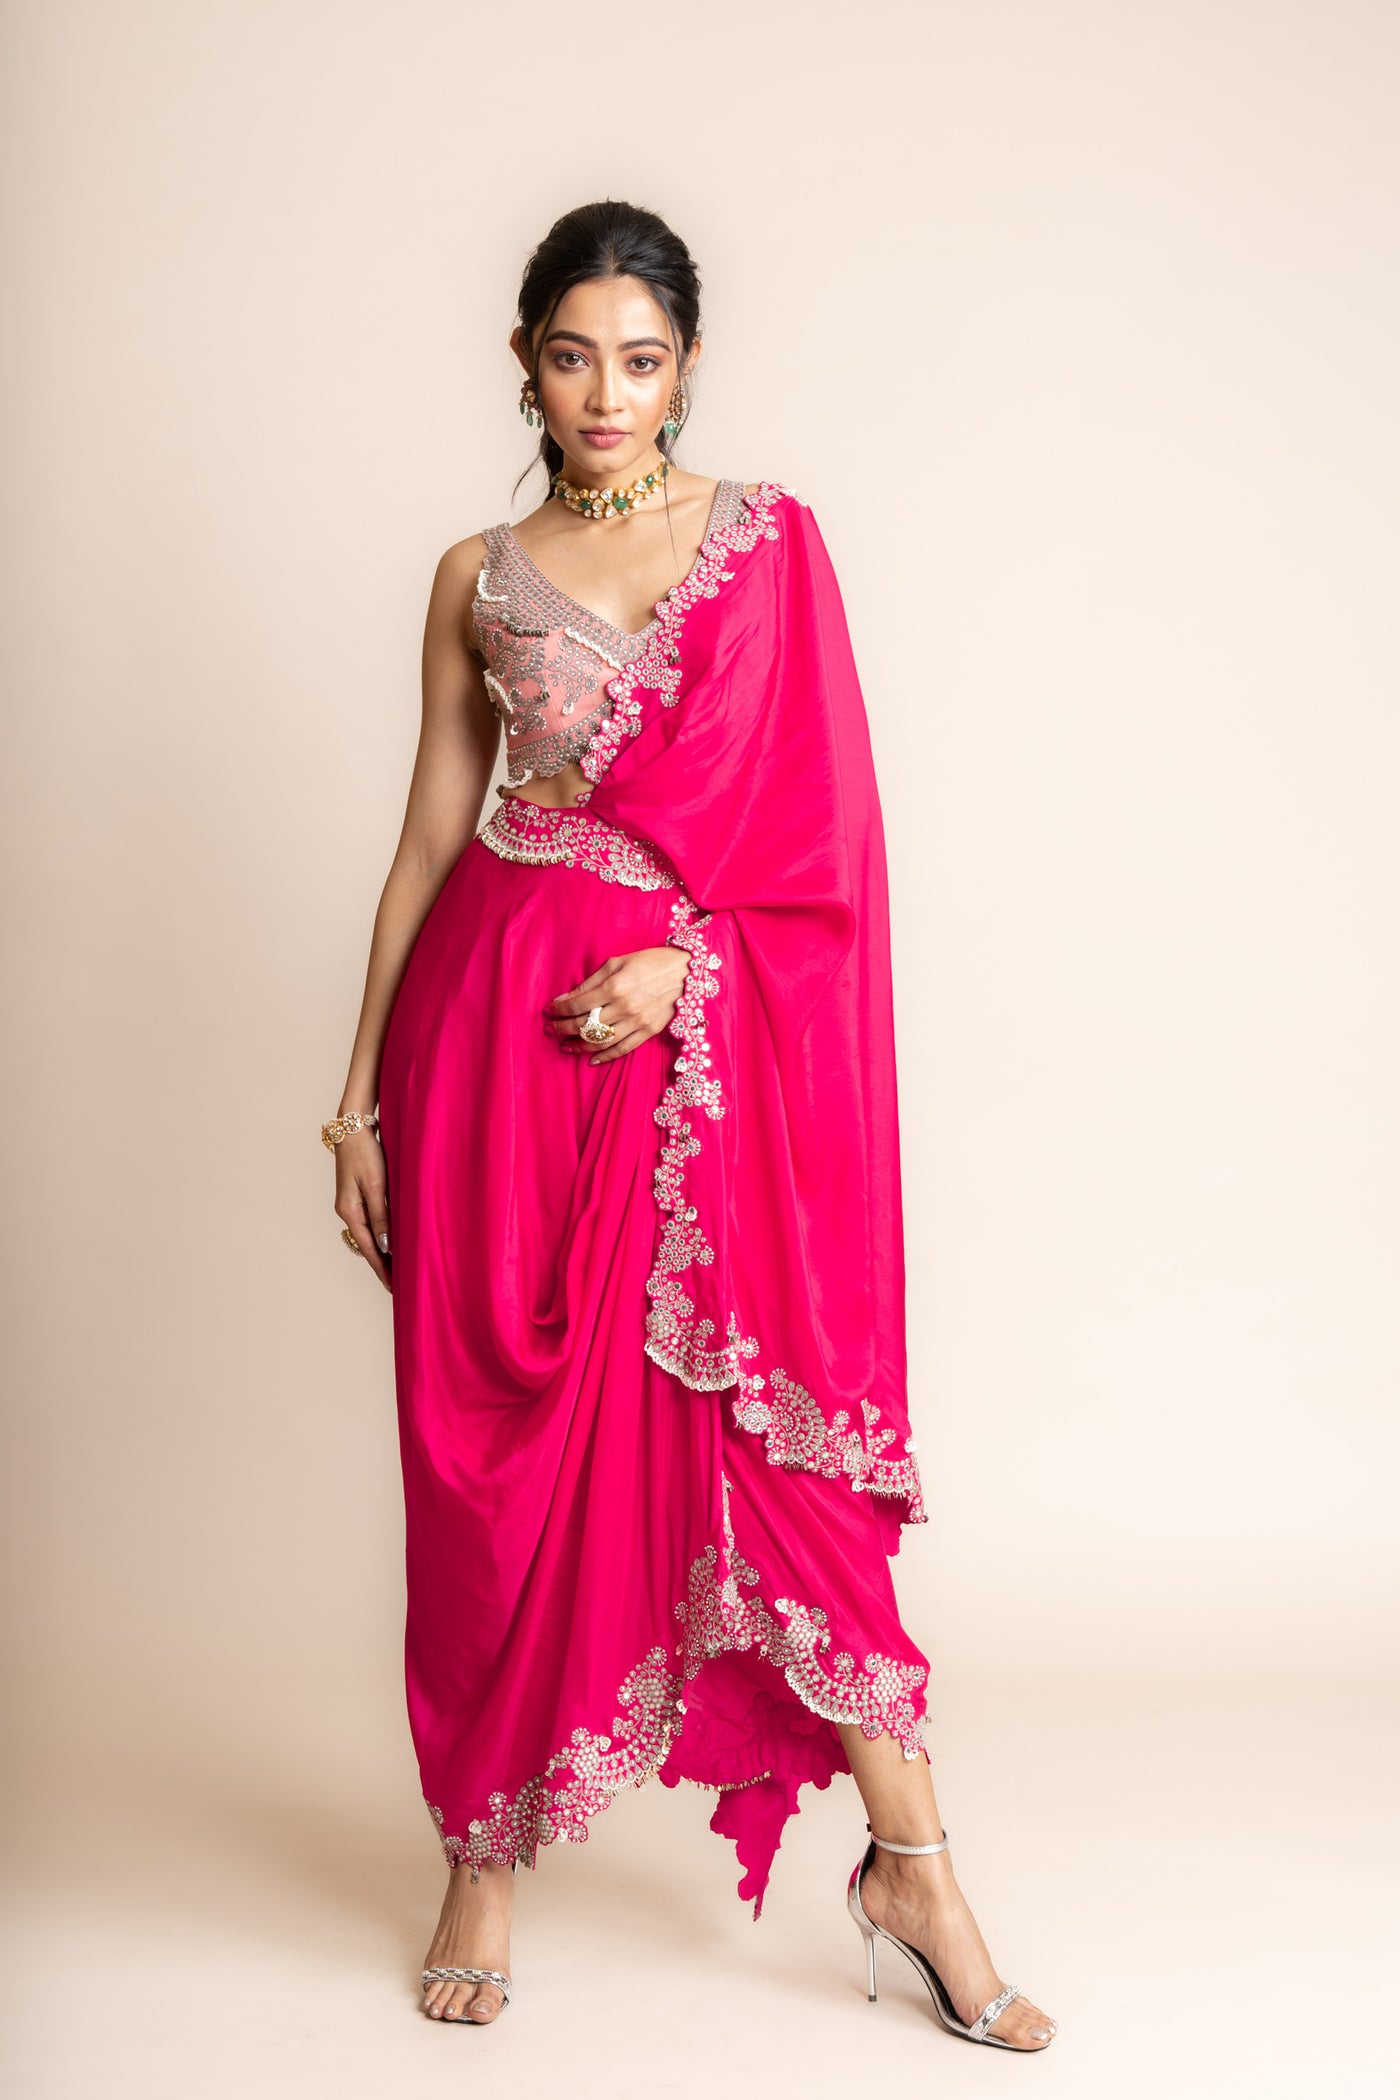 Nupur Kanoi Pre Draped Sari Set indian designer wear online shopping melange singapore